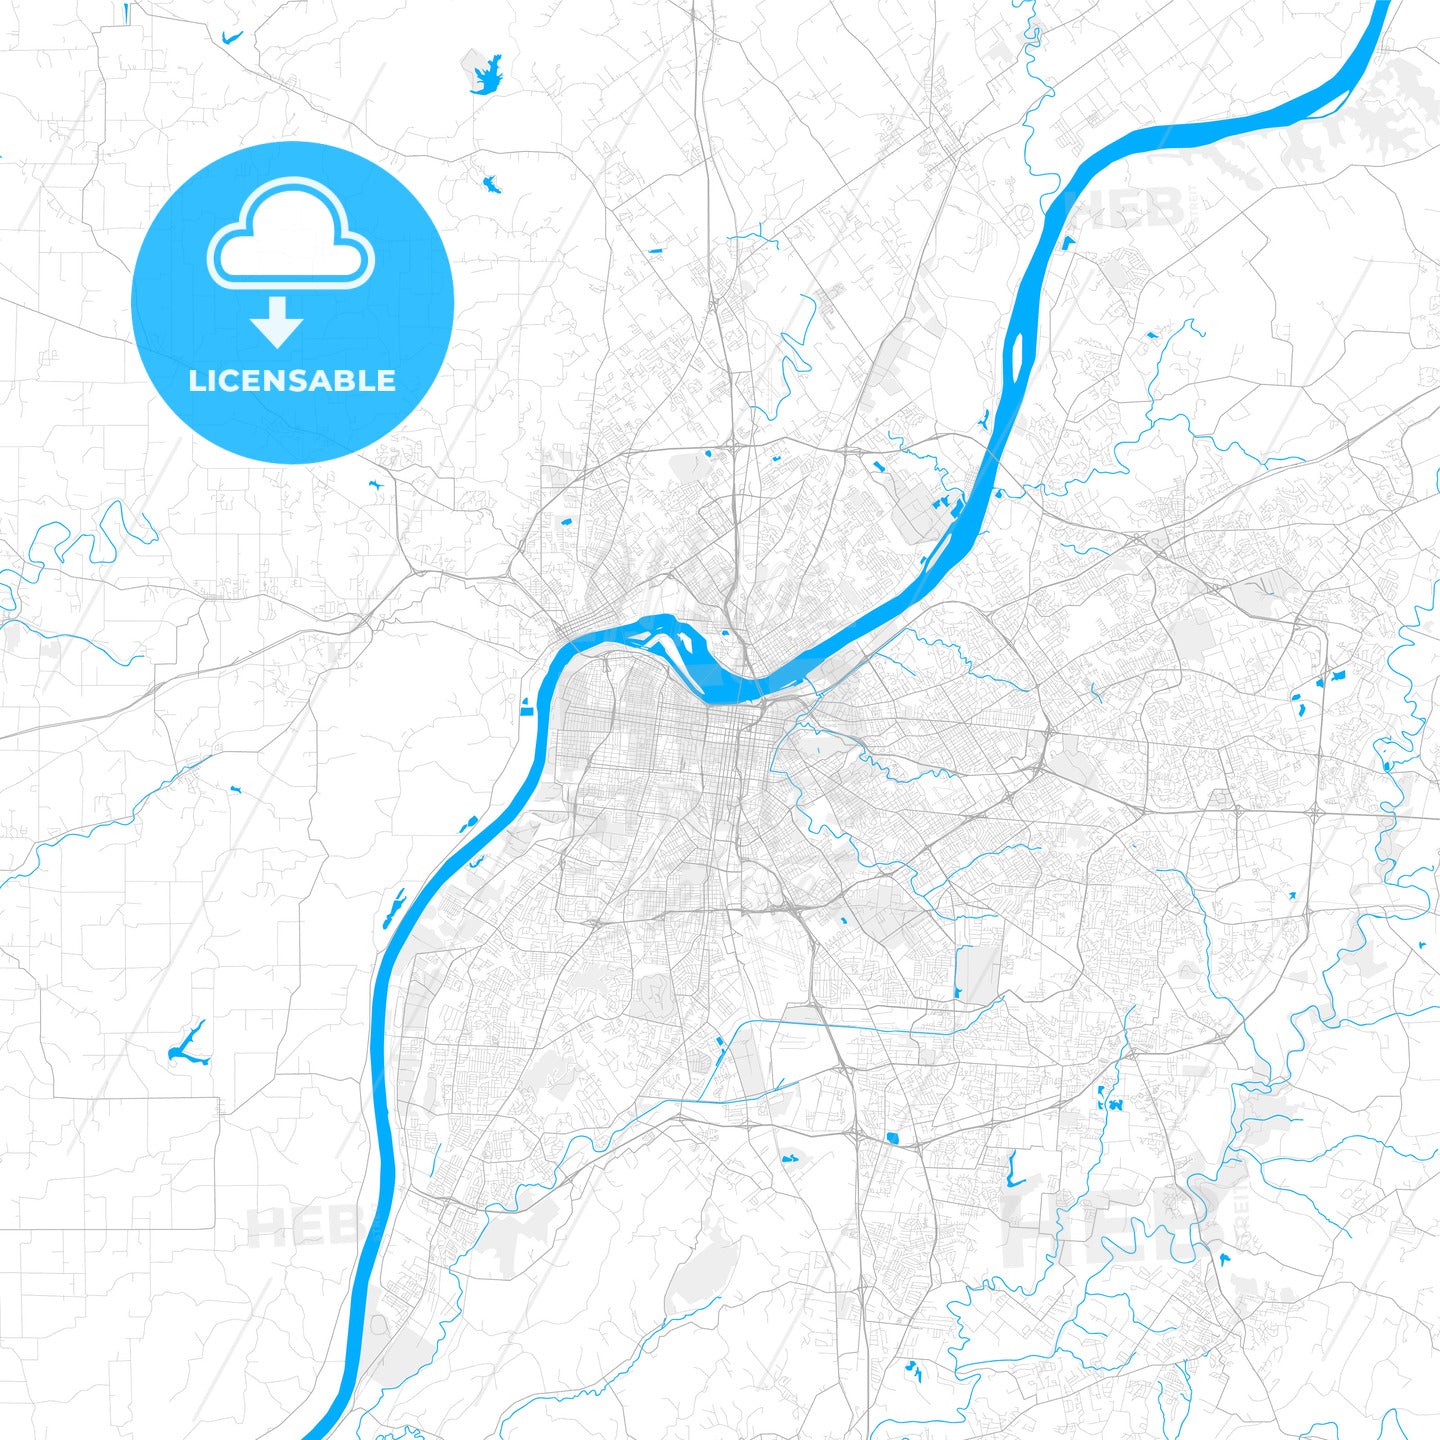 Rich detailed vector map of Louisville, Kentucky, U.S.A.